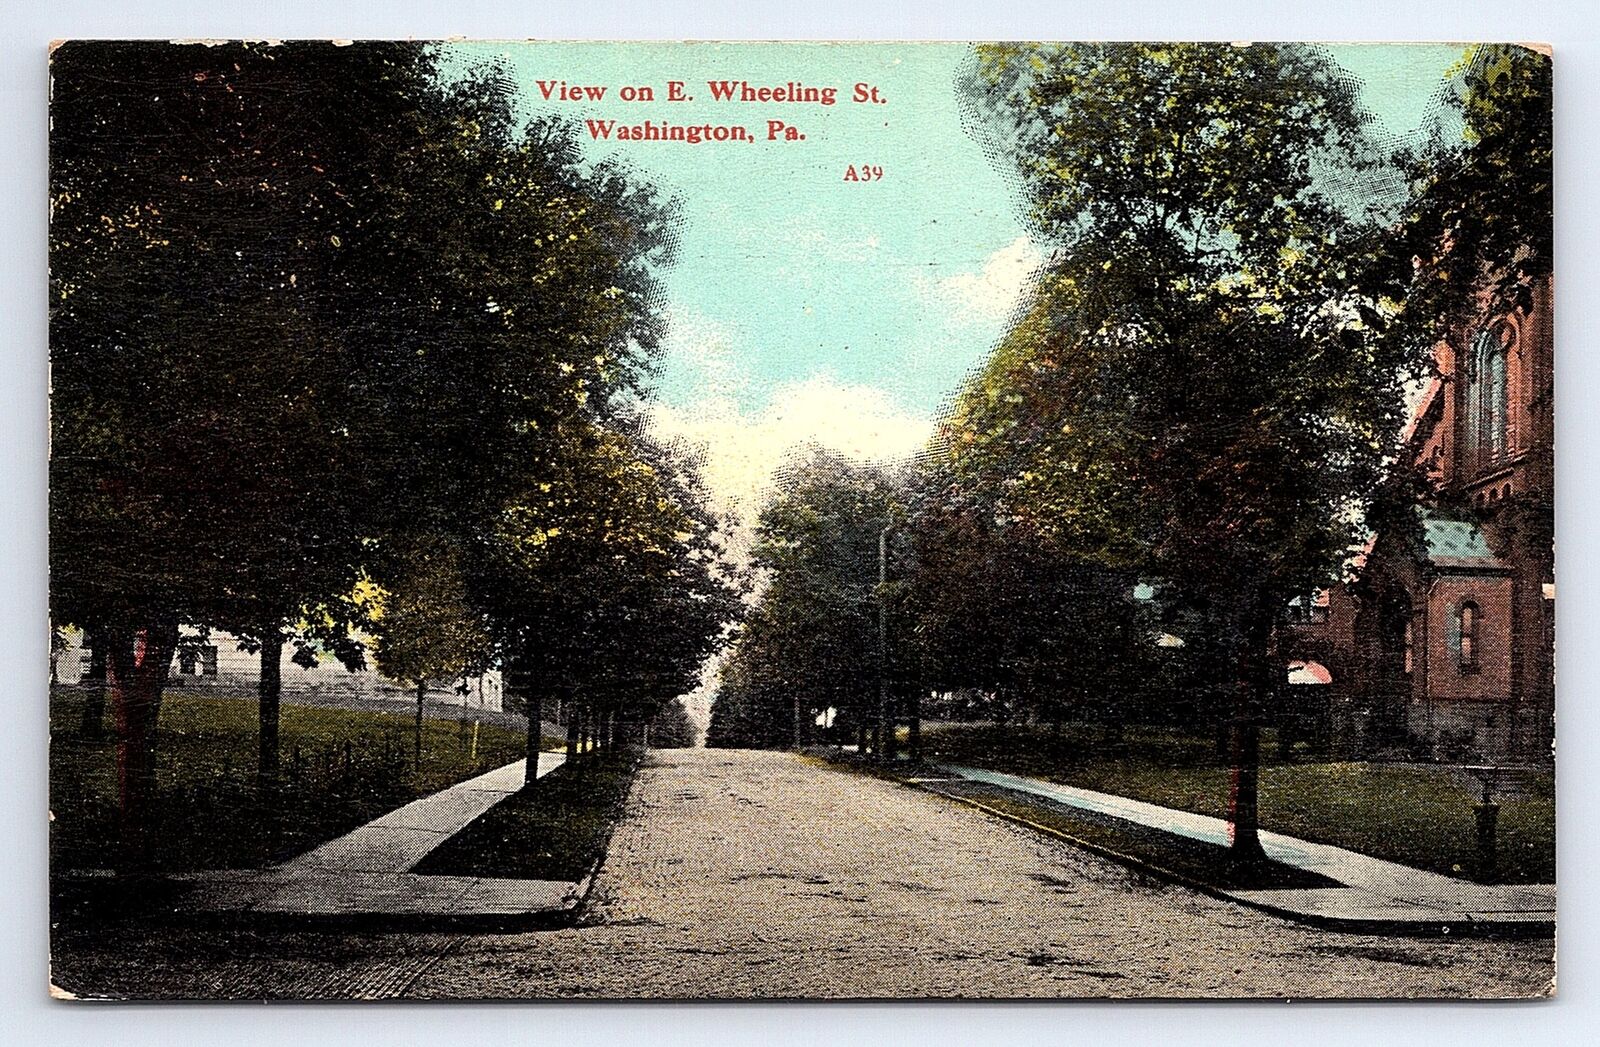 Postcard View On E. Wheeling St. Washington Pennsylvania c.1911